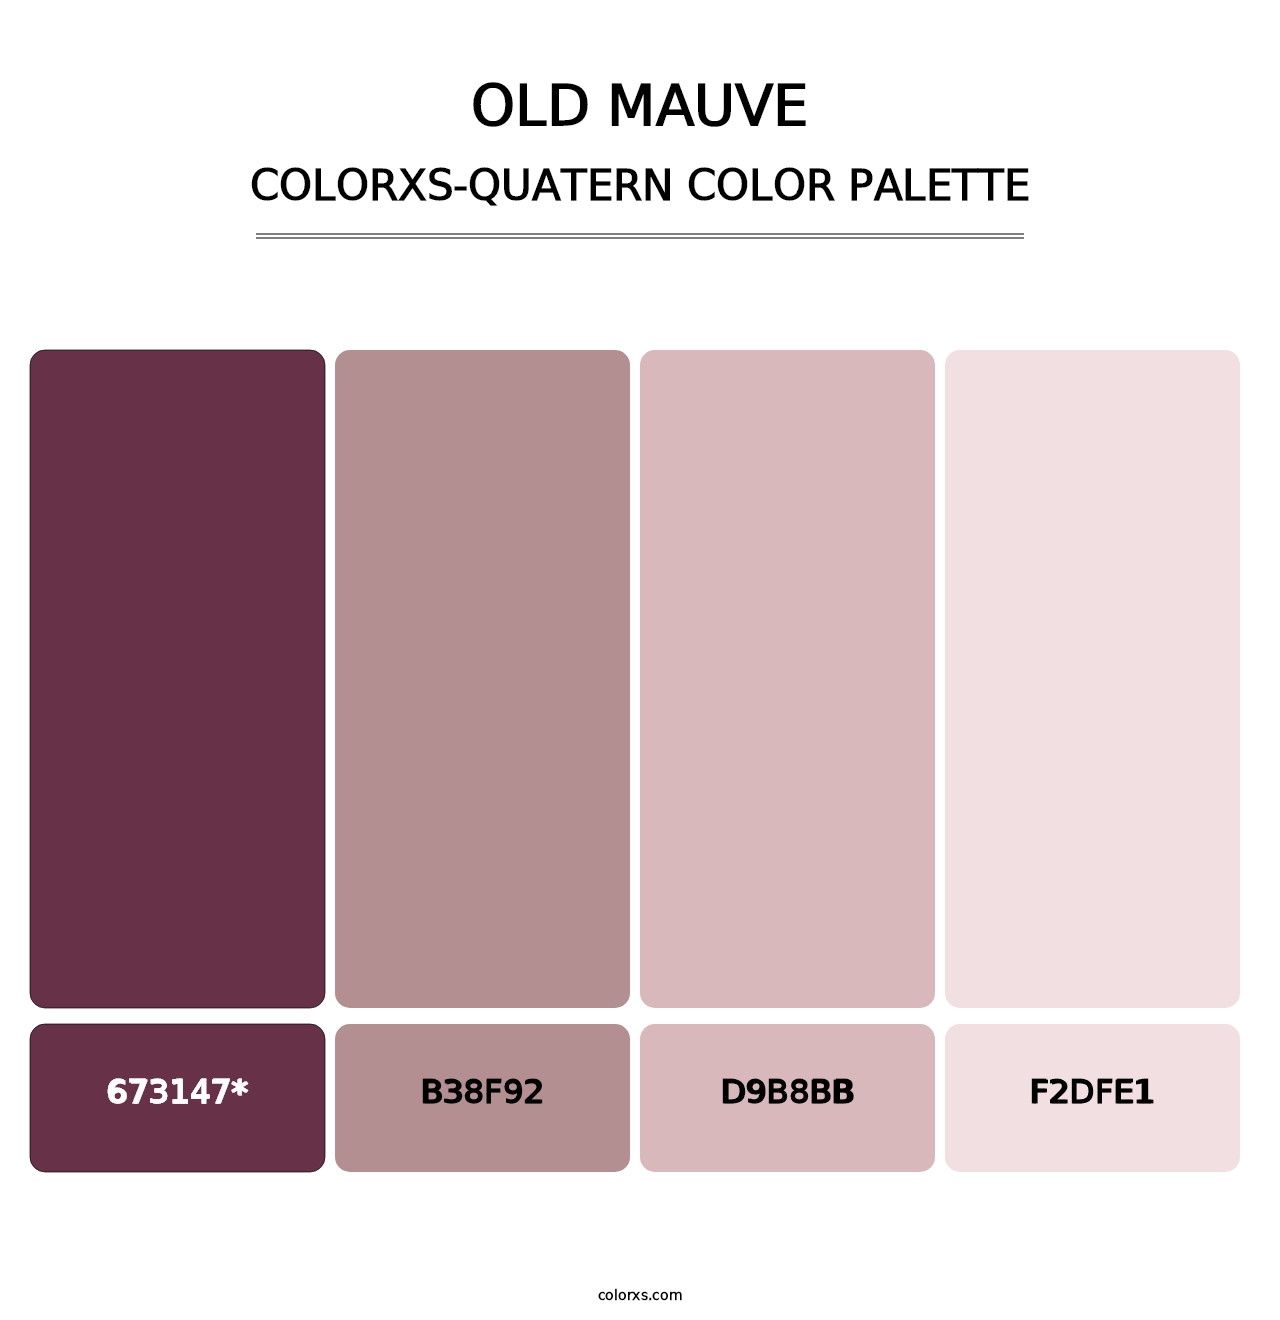 Old Mauve - Colorxs Quatern Palette